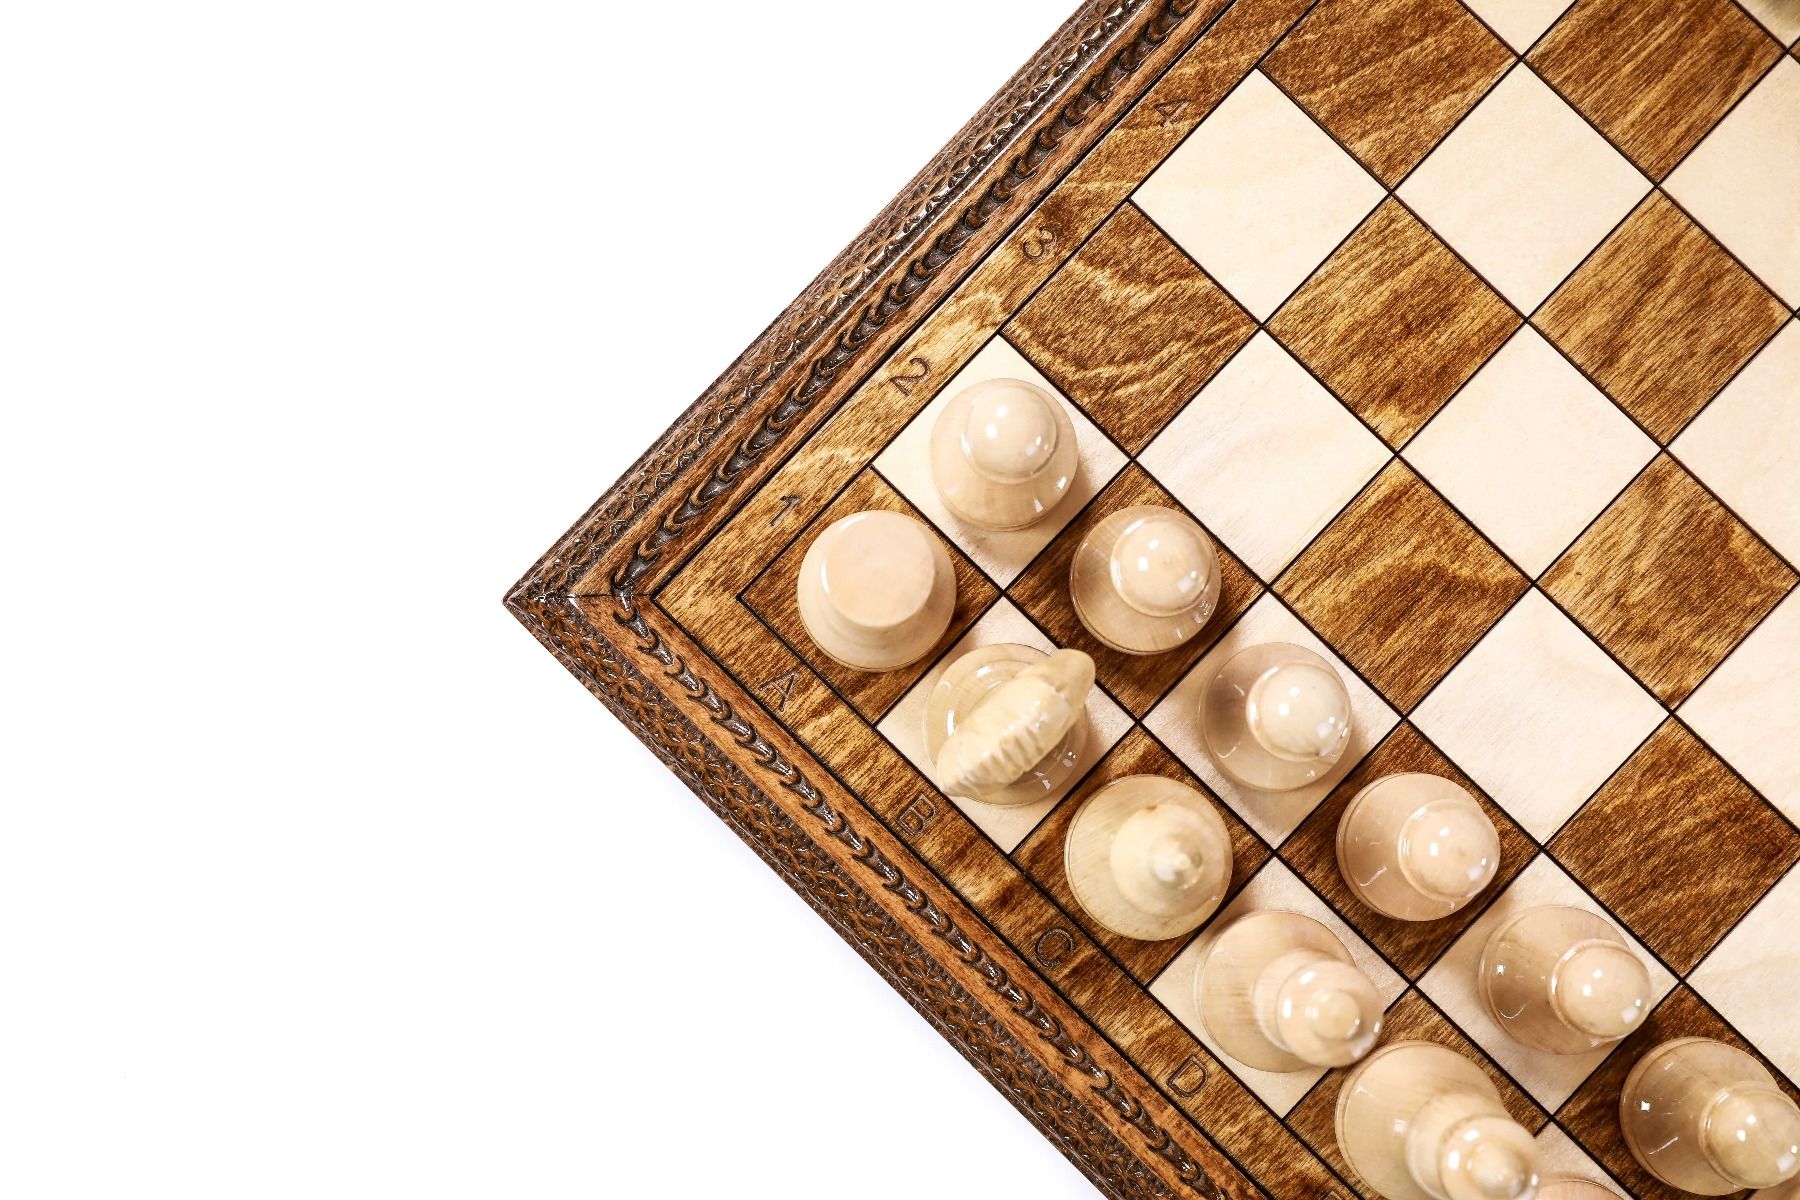 Style Wood Chess Set